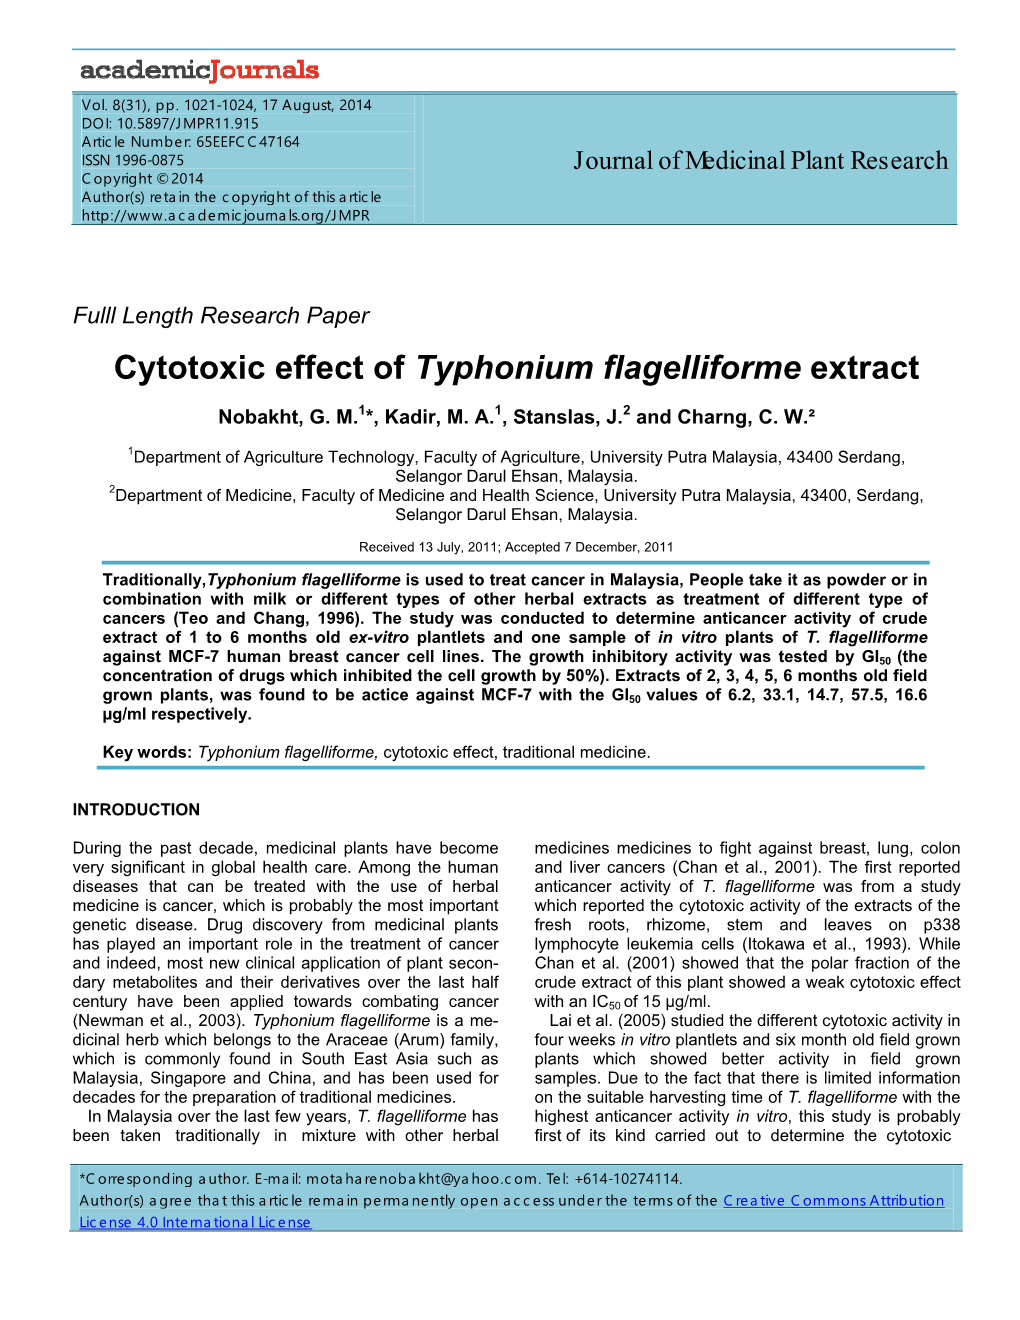 Cytotoxic Effect of Typhonium Flagelliforme Extract